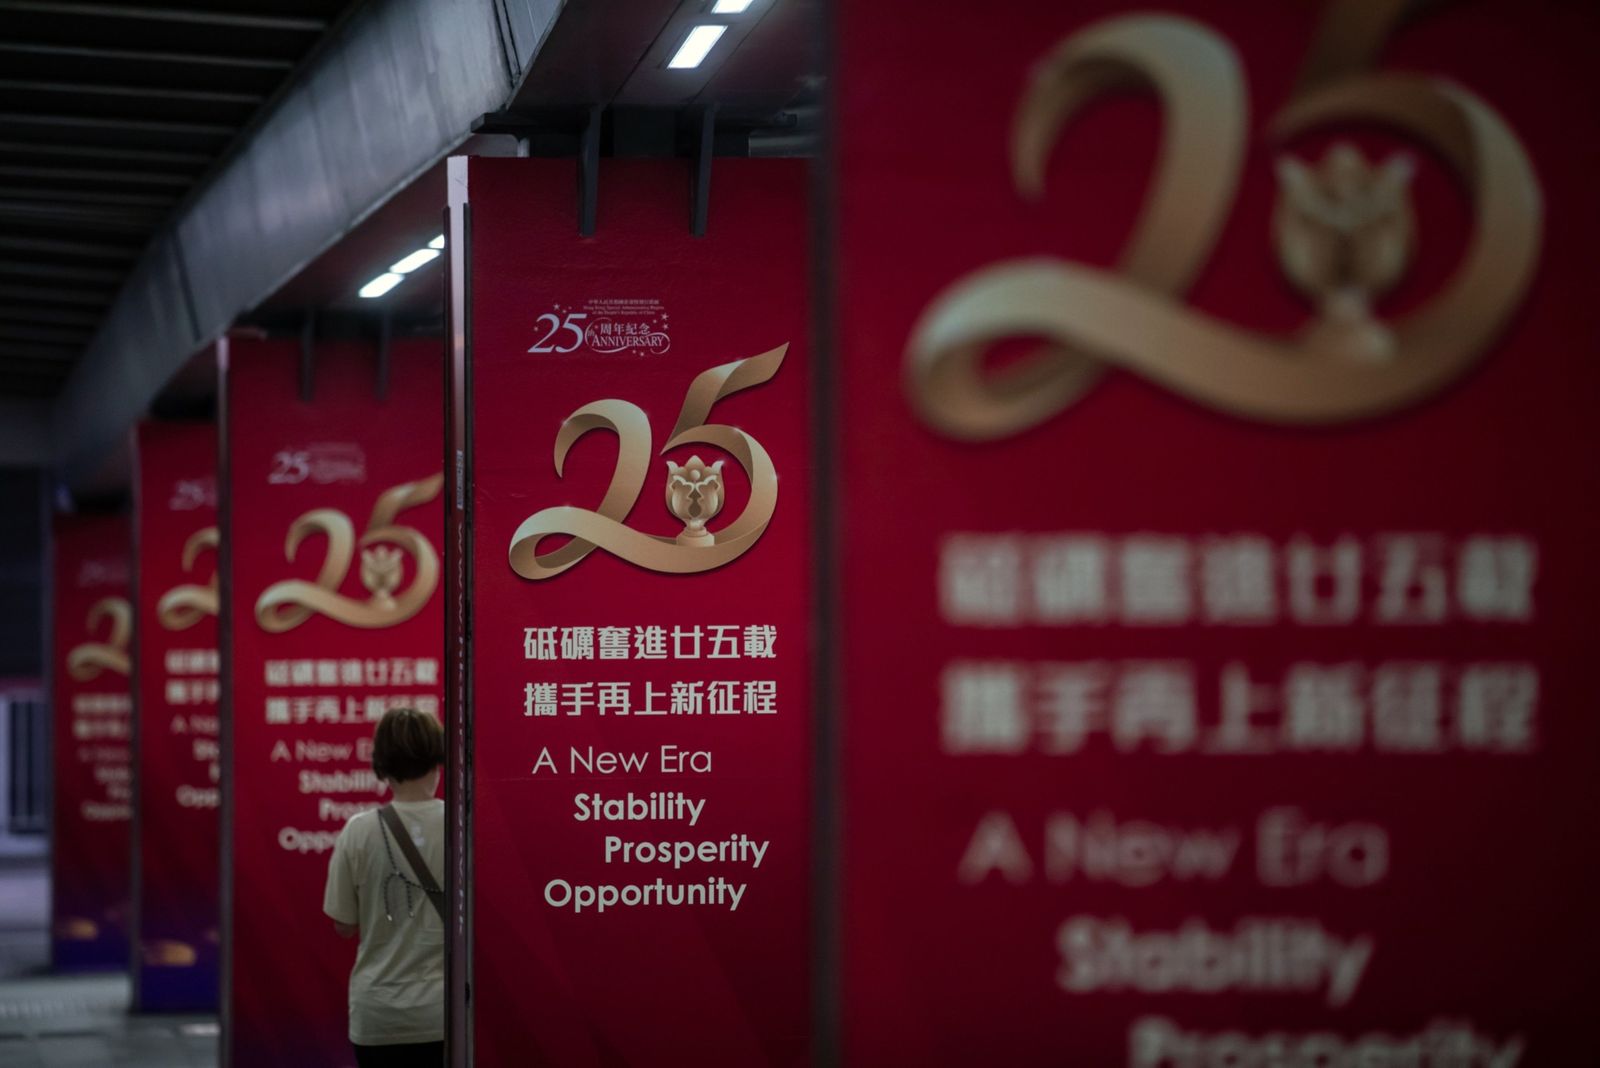 لافتات بمناسبة الذكرى الخامسة والعشرين لعودة هونج كونج إلى الحكم الصيني - 22 يونيو 2022 - Bloomberg